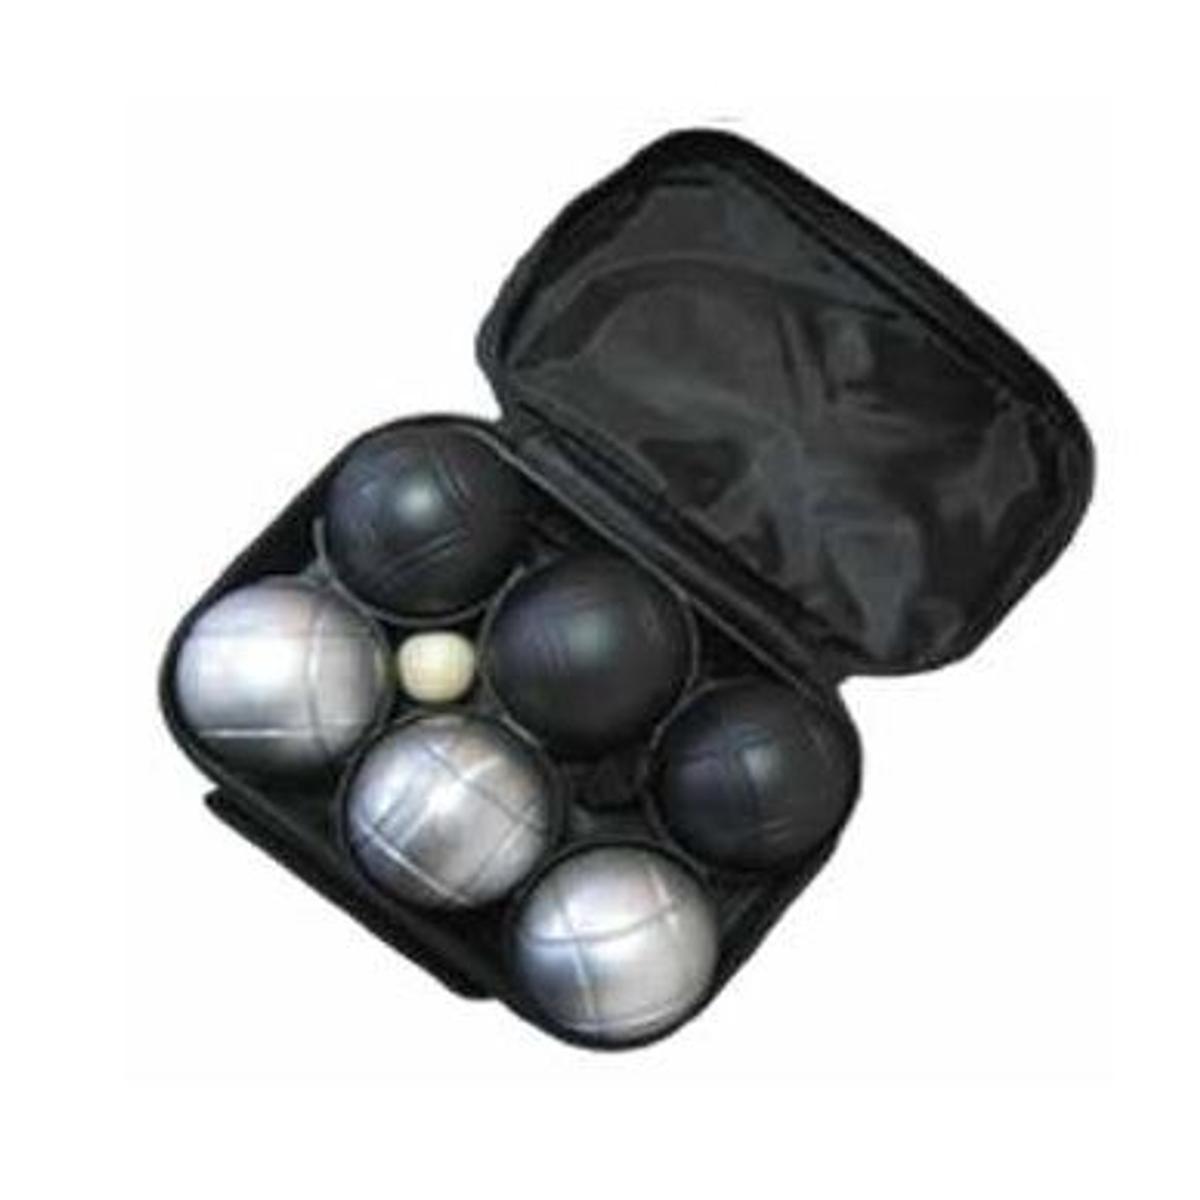 Jeu De Boule 6 ballen (3 zwart/3 grijs) in tas